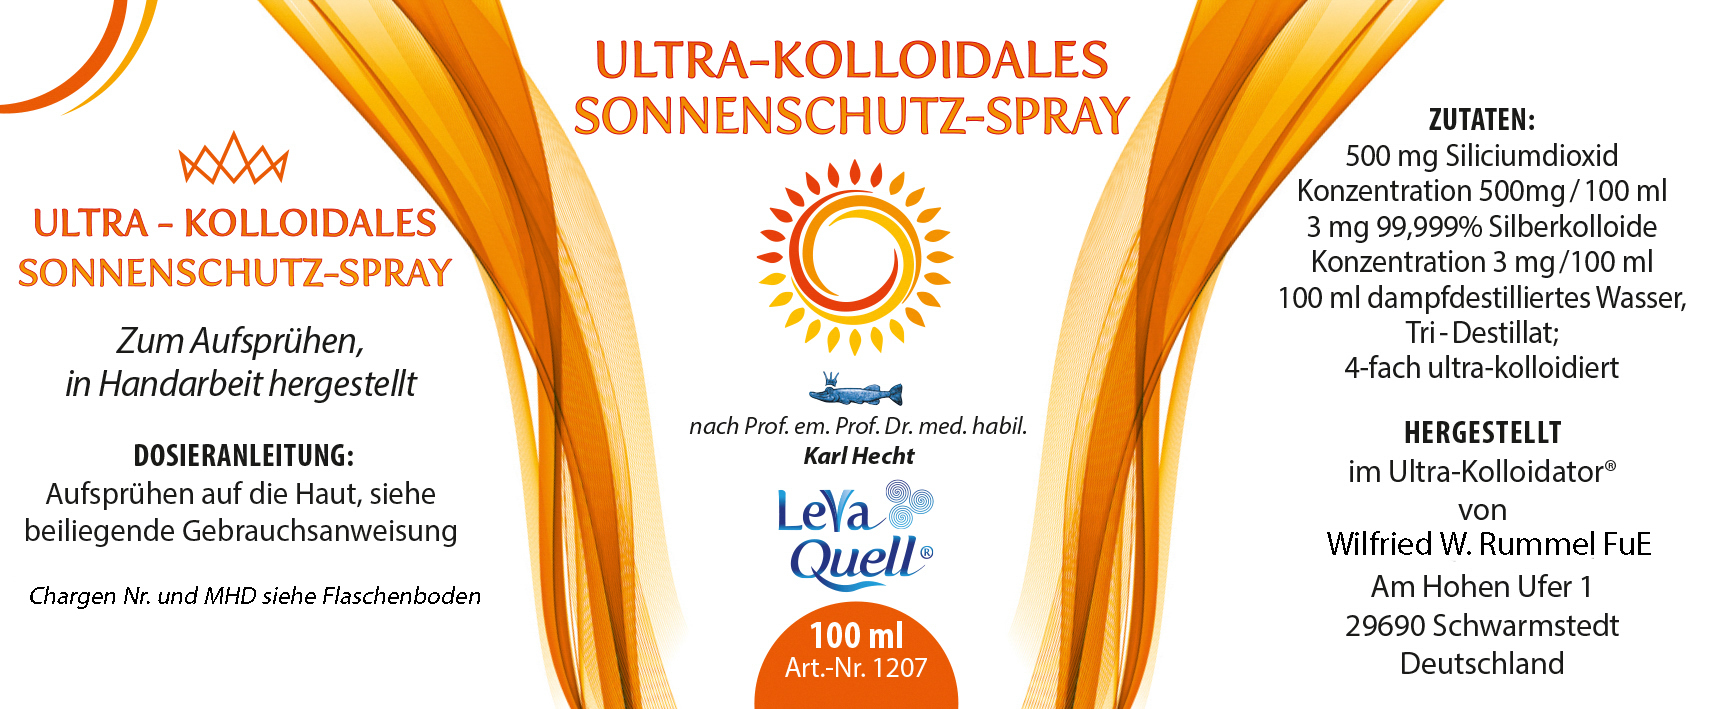 Sonnenschutz-Spray